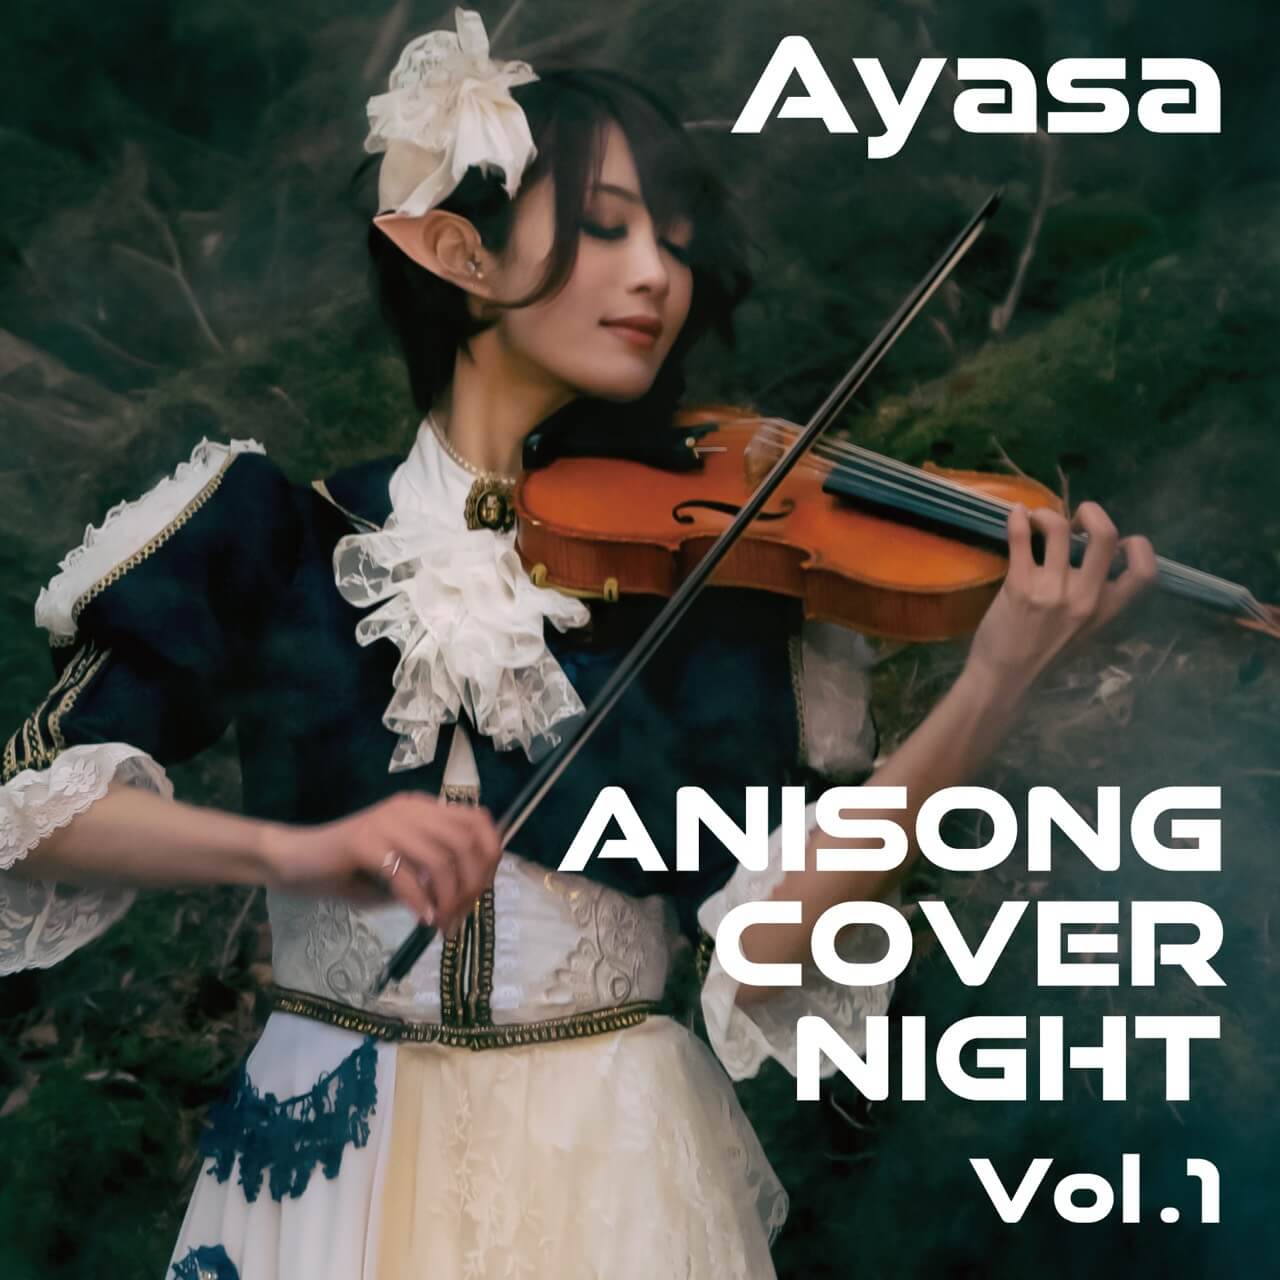 Ayasa初のアニソンカバーアルバム Anisong Cover Night Vol 1 を配信 E Talentbank Co Ltd